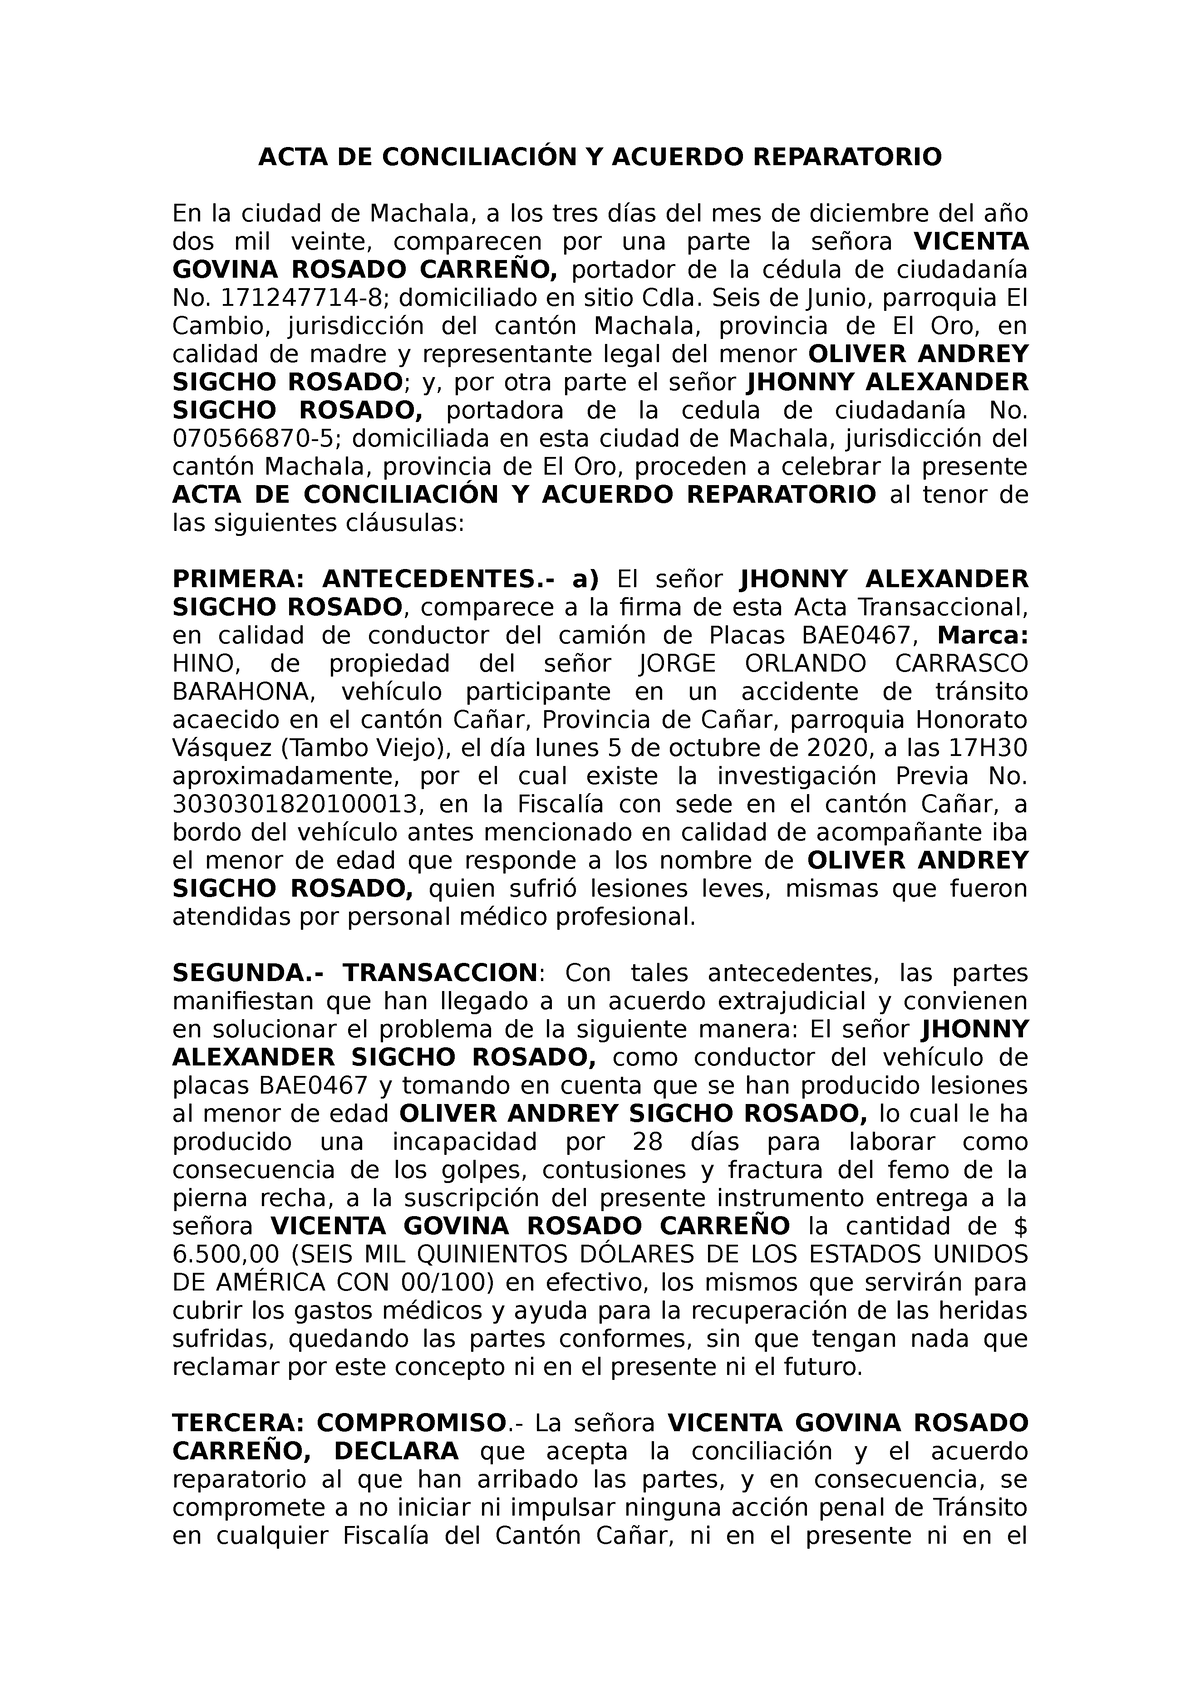 Acta de Acuerdo Reparatorio y Transacional - ACTA DE CONCILIACIÓN Y ACUERDO  REPARATORIO En la ciudad - Studocu